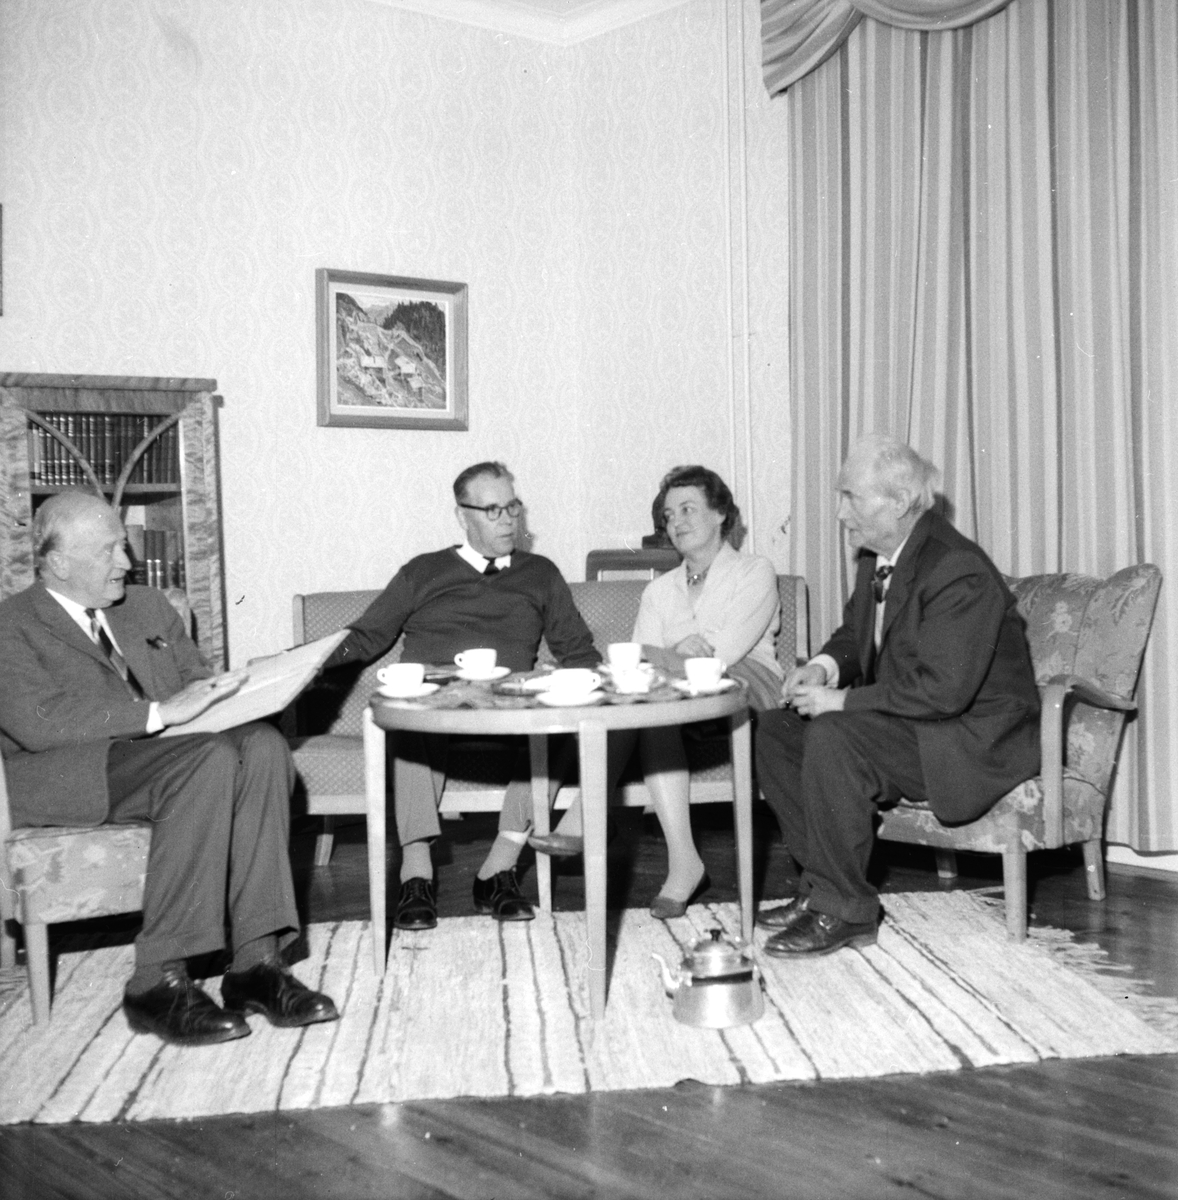 Kratten. Skogsvårdskolan.
9/10-1960